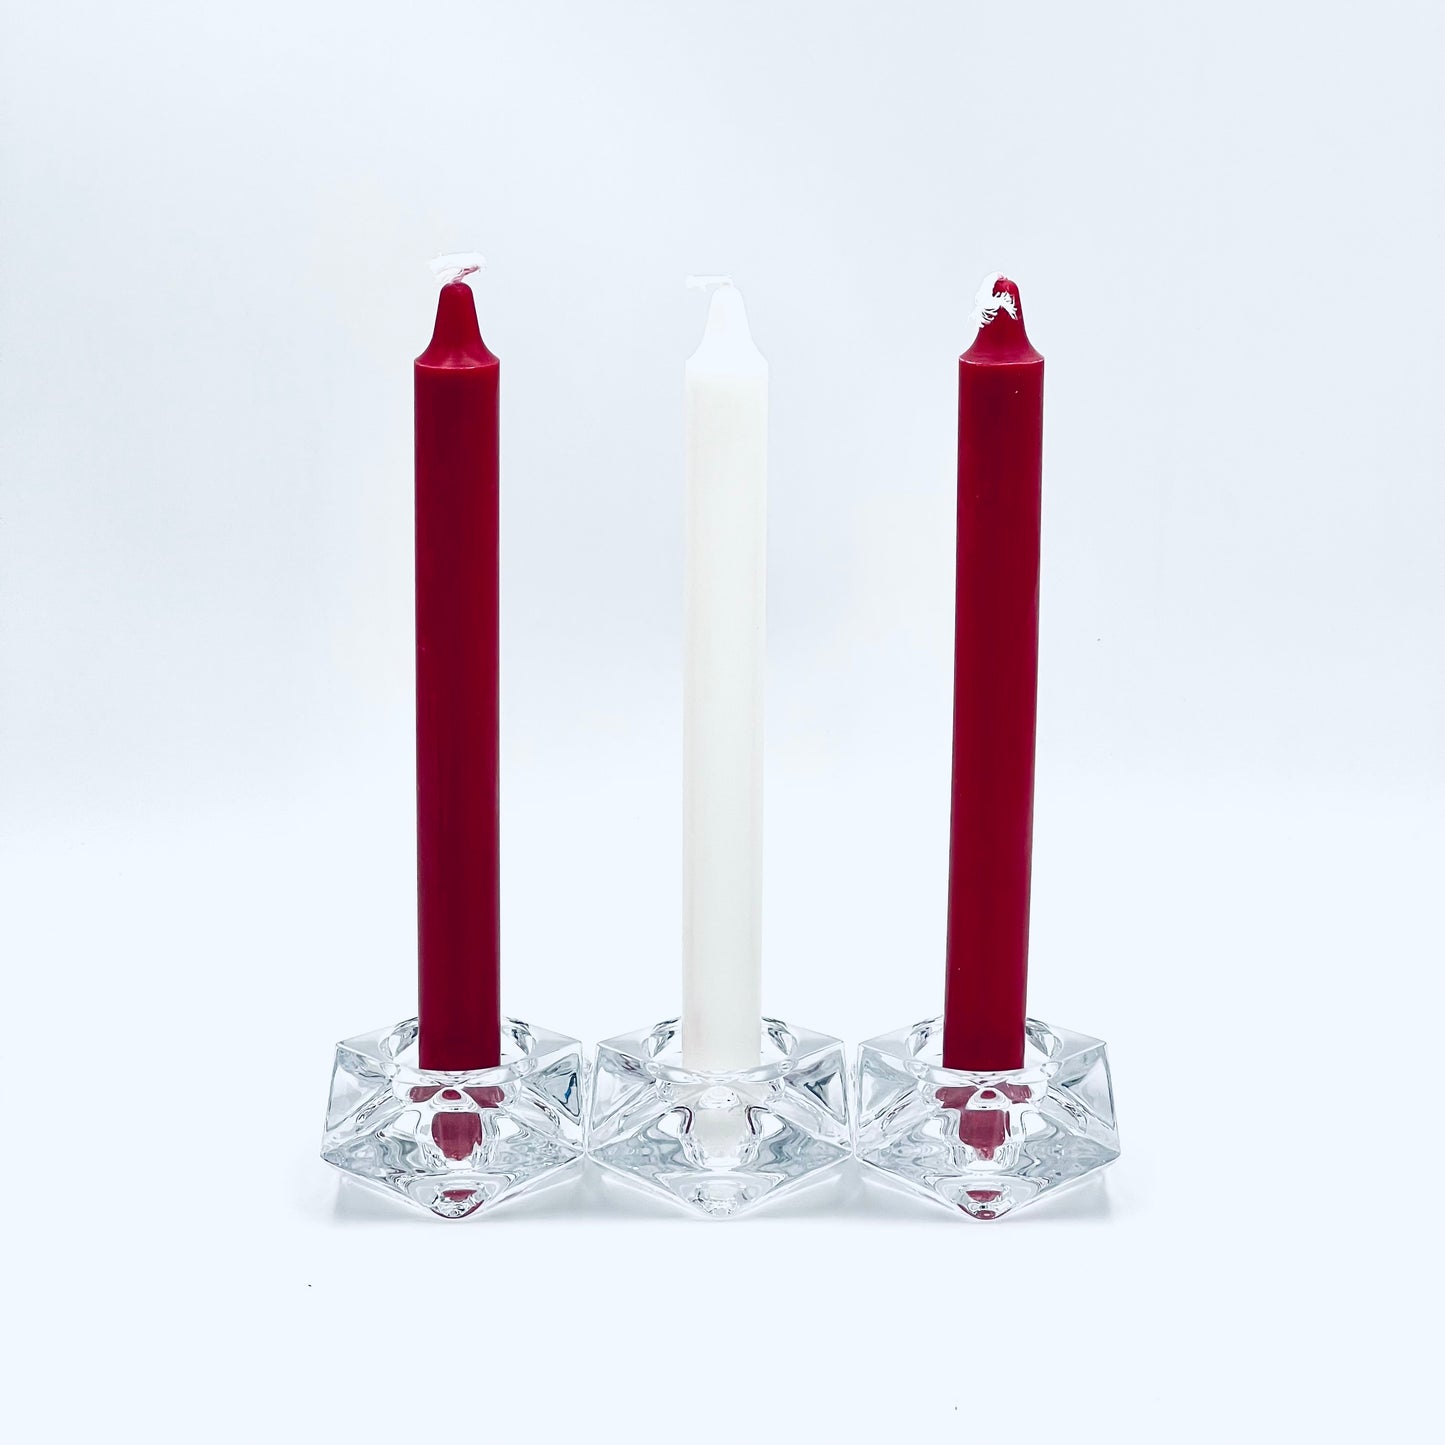 Stearīna galda sveču komplekts Latvijas karoga krāsās, 3 sveces 24 cm.i